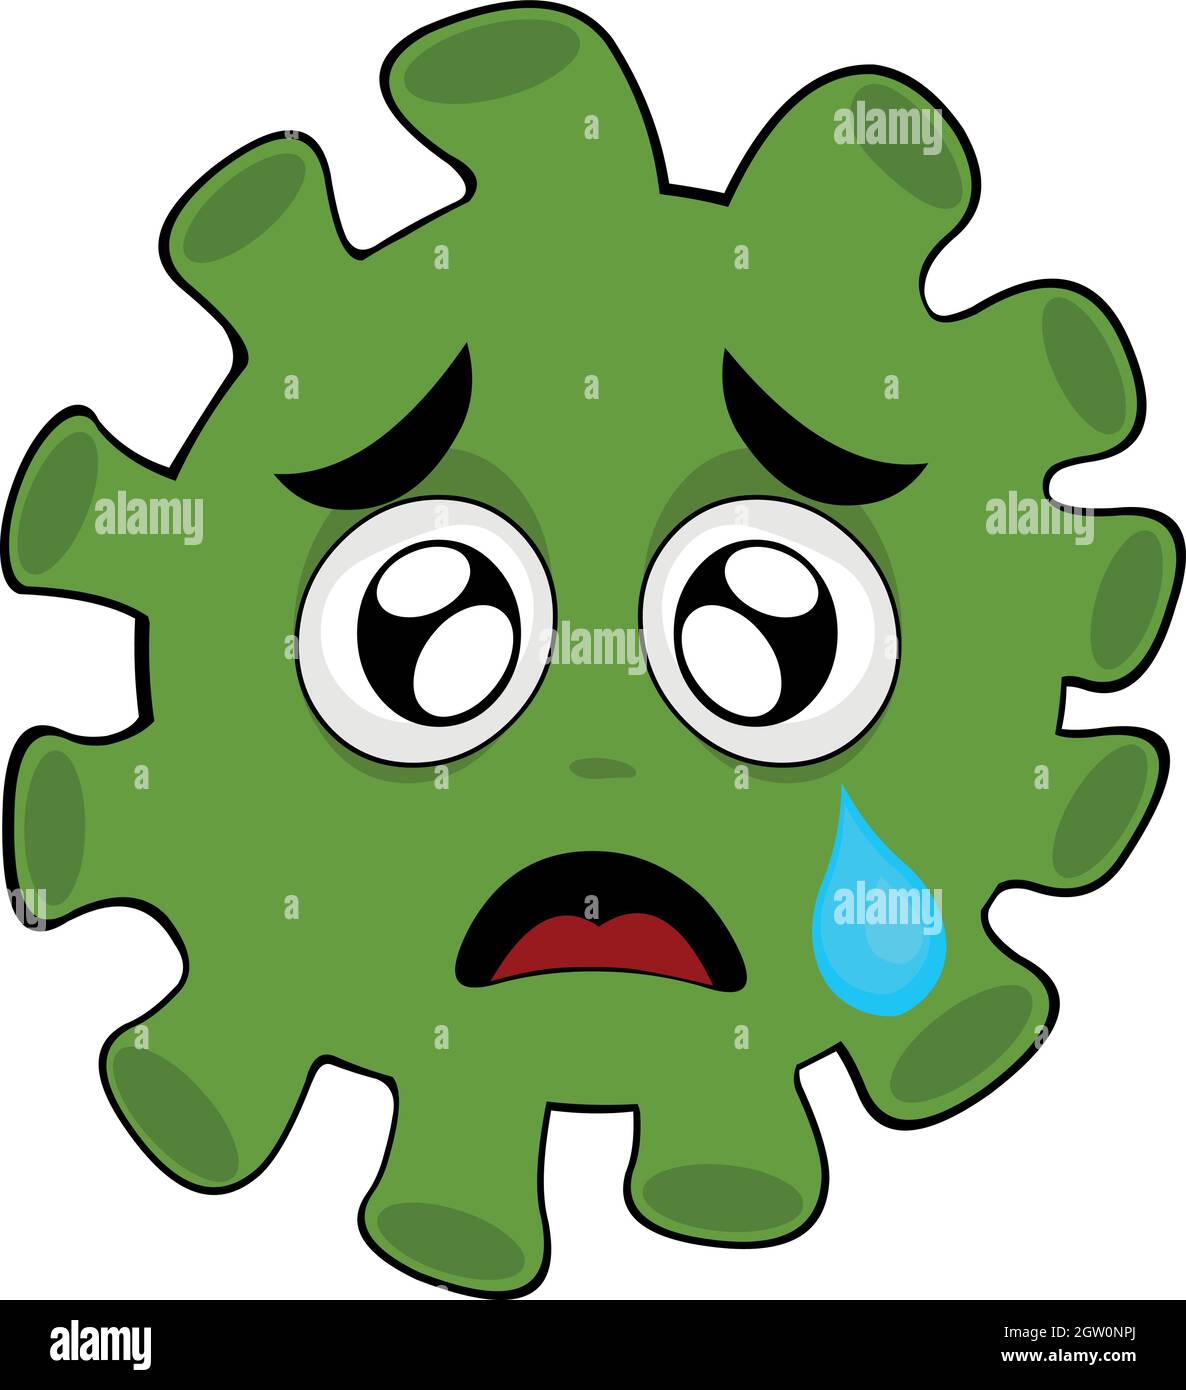 Vektor-Illustration eines Virus, Bakterien oder Mikrobe Cartoon Charakter Emoticon, mit einem traurigen Ausdruck und eine Träne aus seinem Auge fallen Stock Vektor